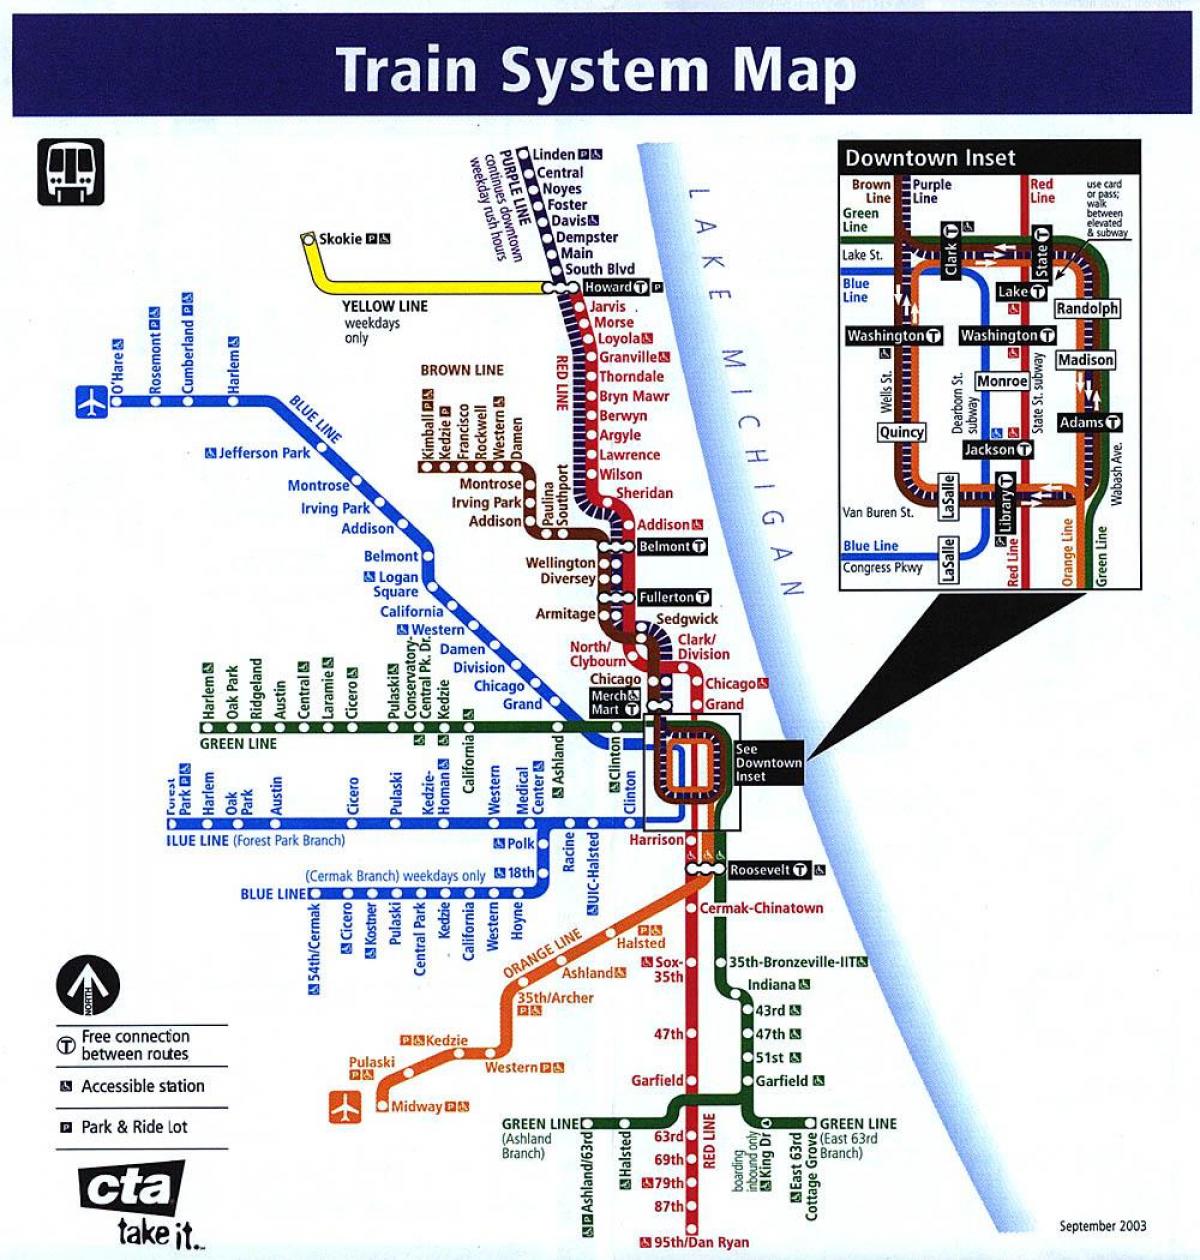 शिकागो मेट्रो लाइनों के मानचित्र